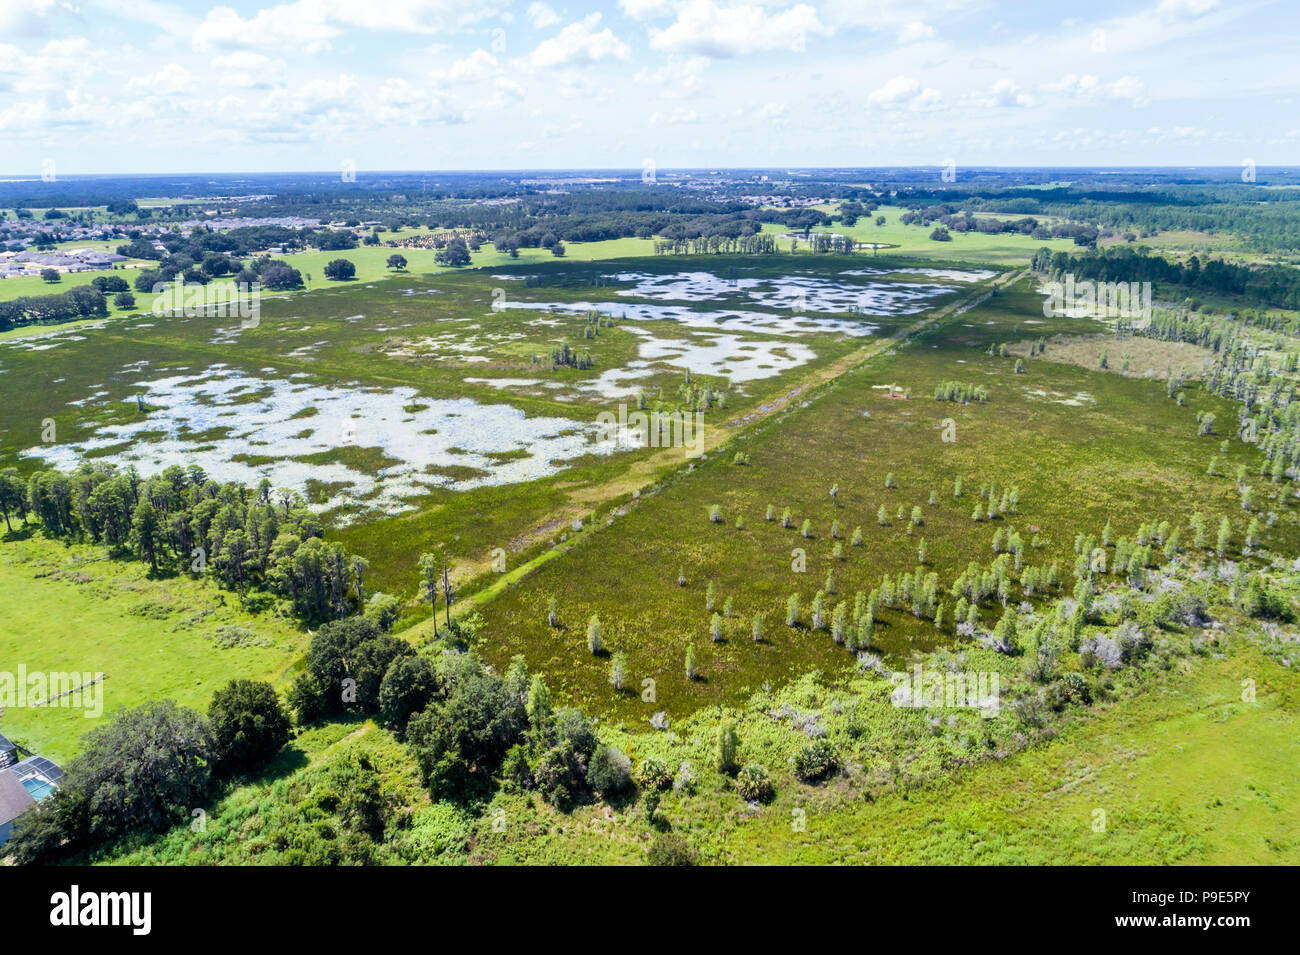 Orlando Florida,Davenport,zone de gestion de la faune de Hilochee terres humides dans le bassin des marais prairie humide,écosystème des marais verts,vue aérienne au-dessus,FL1807 Banque D'Images